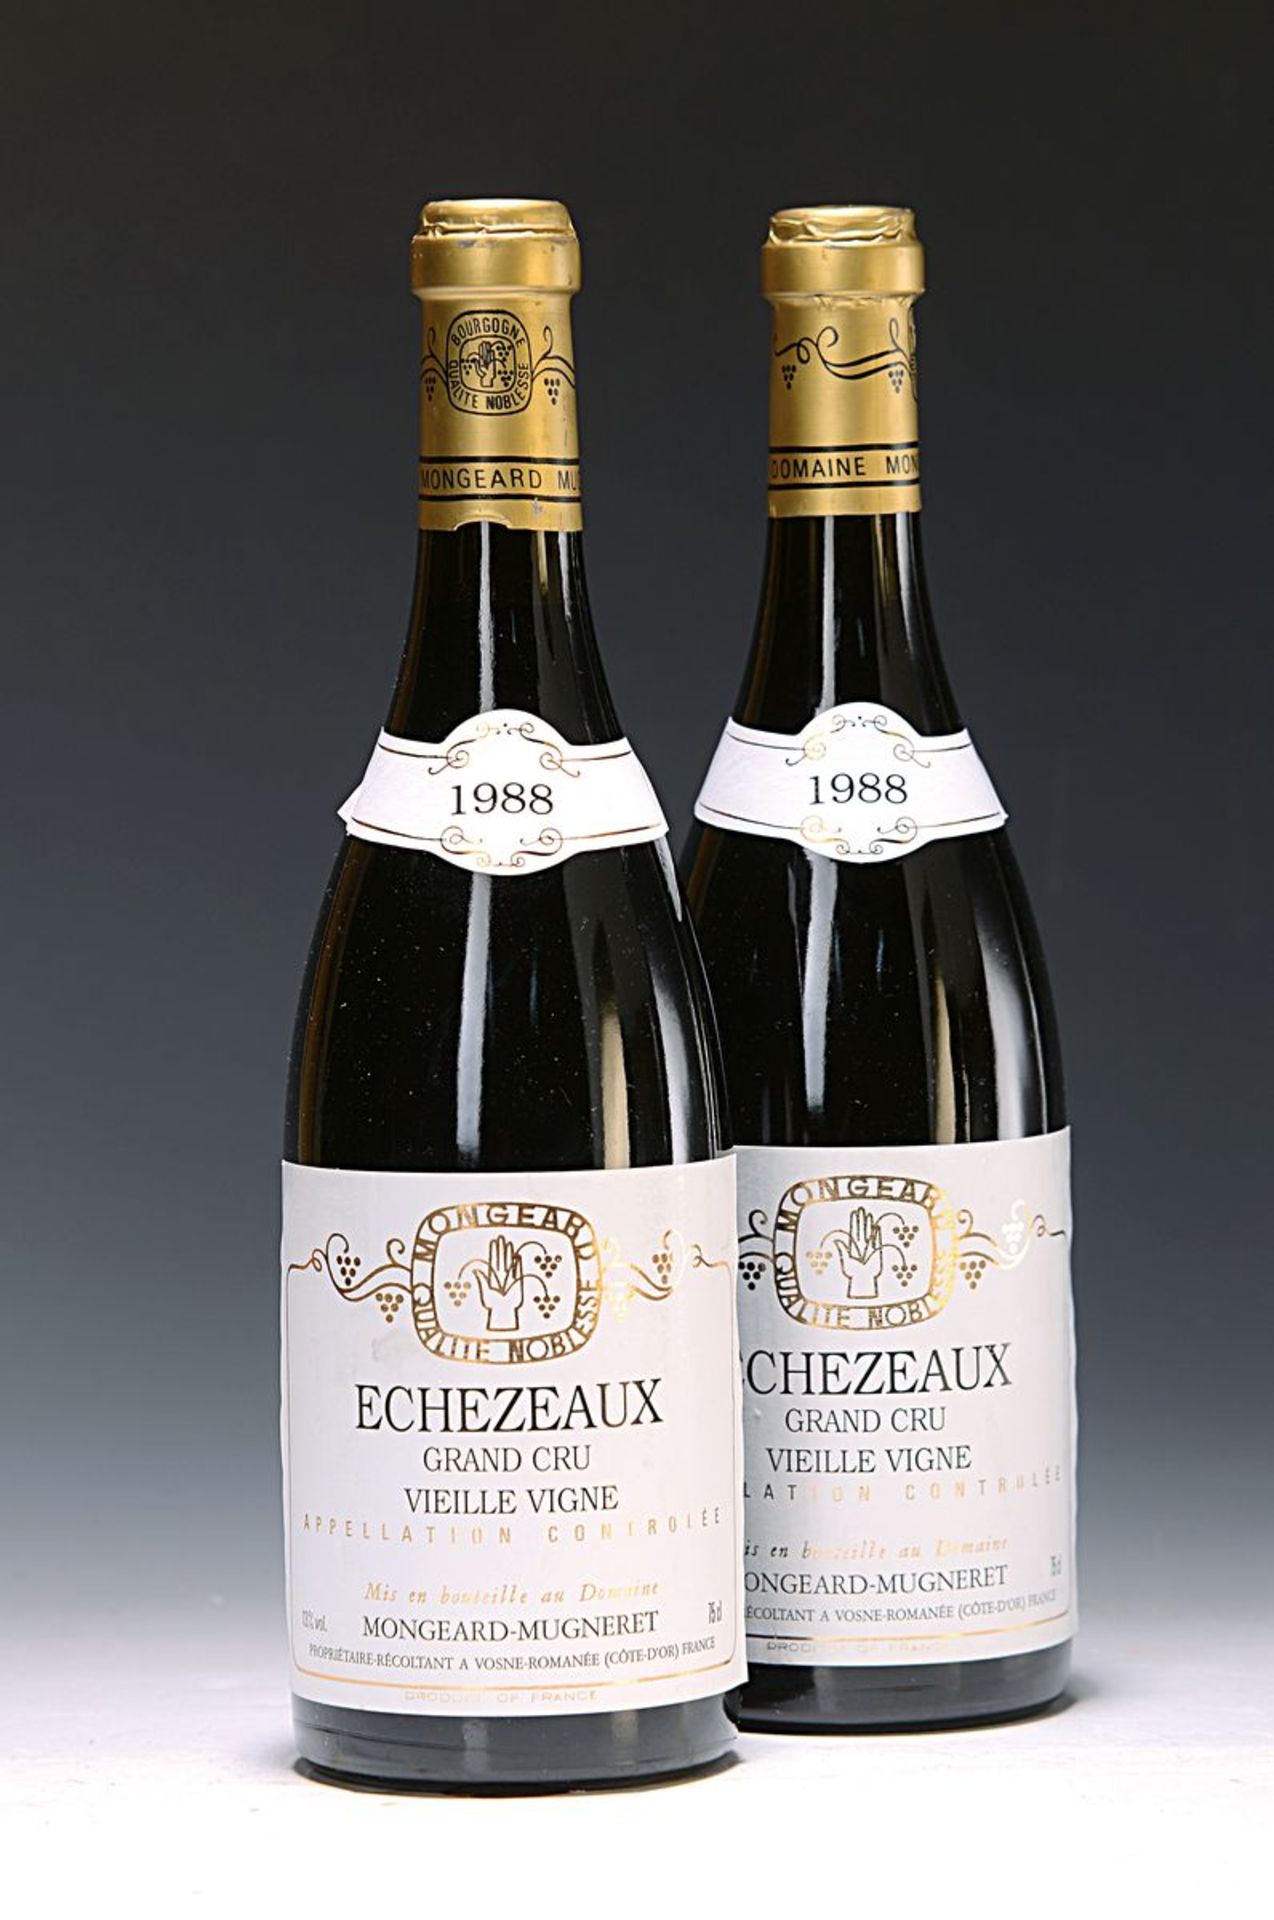 4 Flaschen Echezeaux Grand Cru Vielle Vigne, 1988,